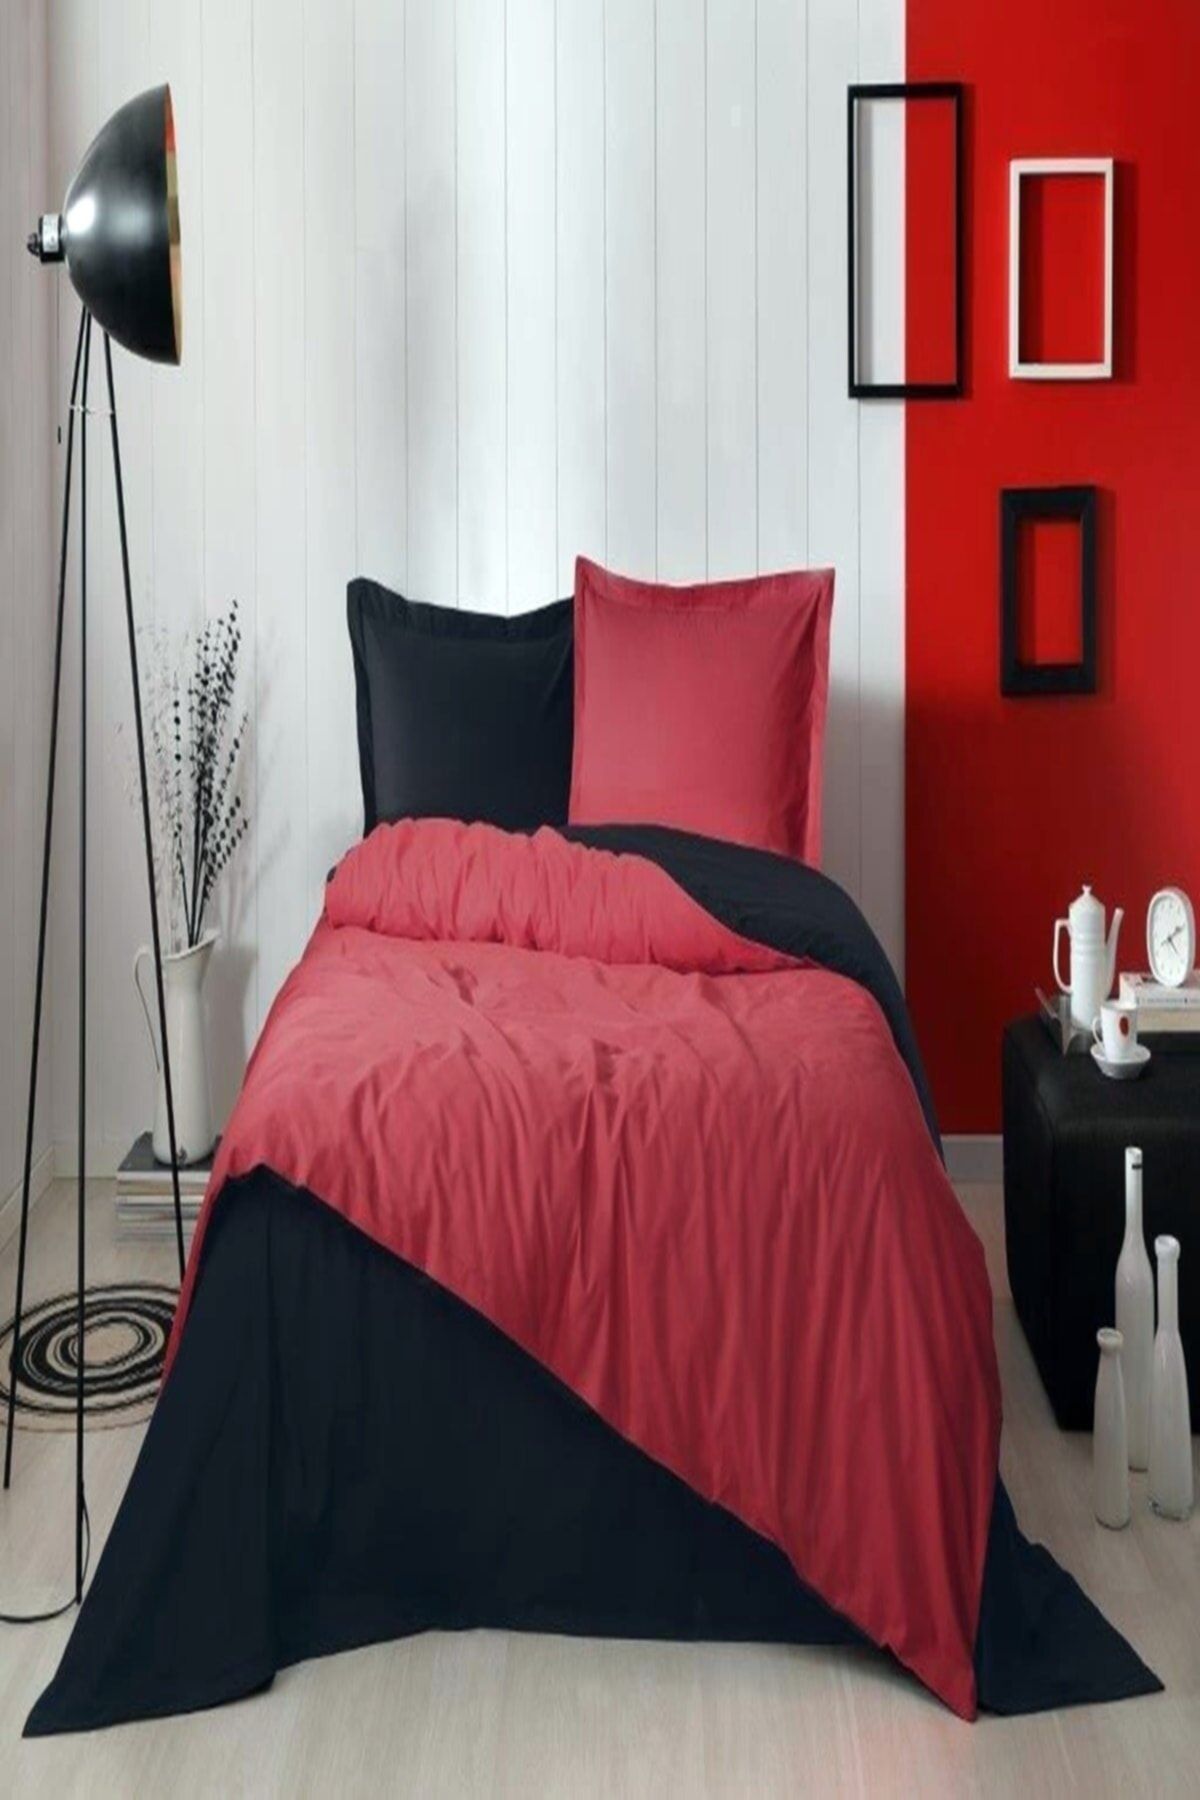 Özdilek Tek Kişilik Uyku Seti Colormix Kırmızı Siyah